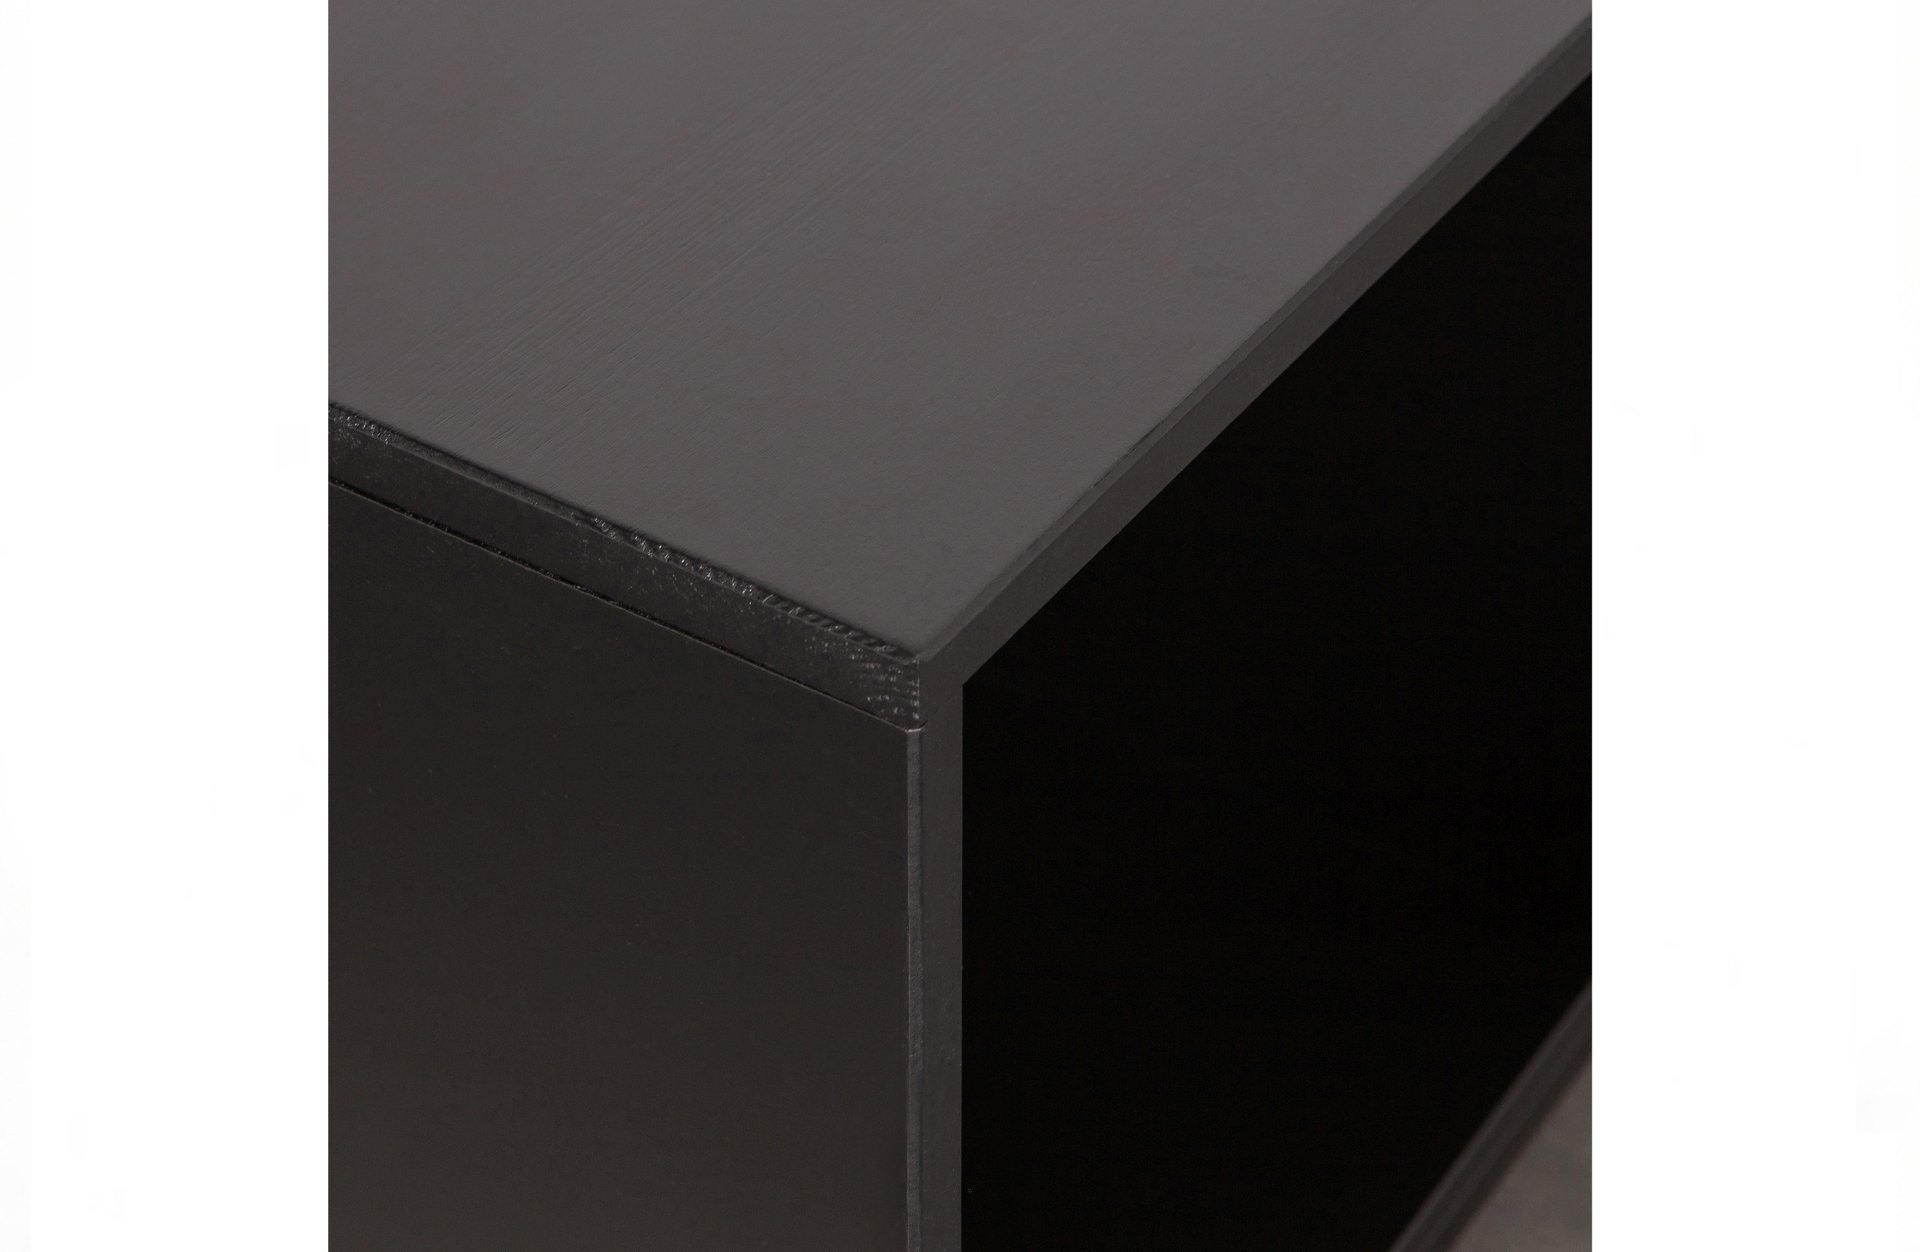 Der Schrank VT Lower Case überzeugt mit seinem klassischen Design. Gefertigt wurde er aus Kiefernholz, welches einen schwarzen Farbton besitzt. Das Gestell ist aus Metall und hat eine schwarze Farbe. Der Schrank verfügt über zwei Türen und zwei offene Fäc